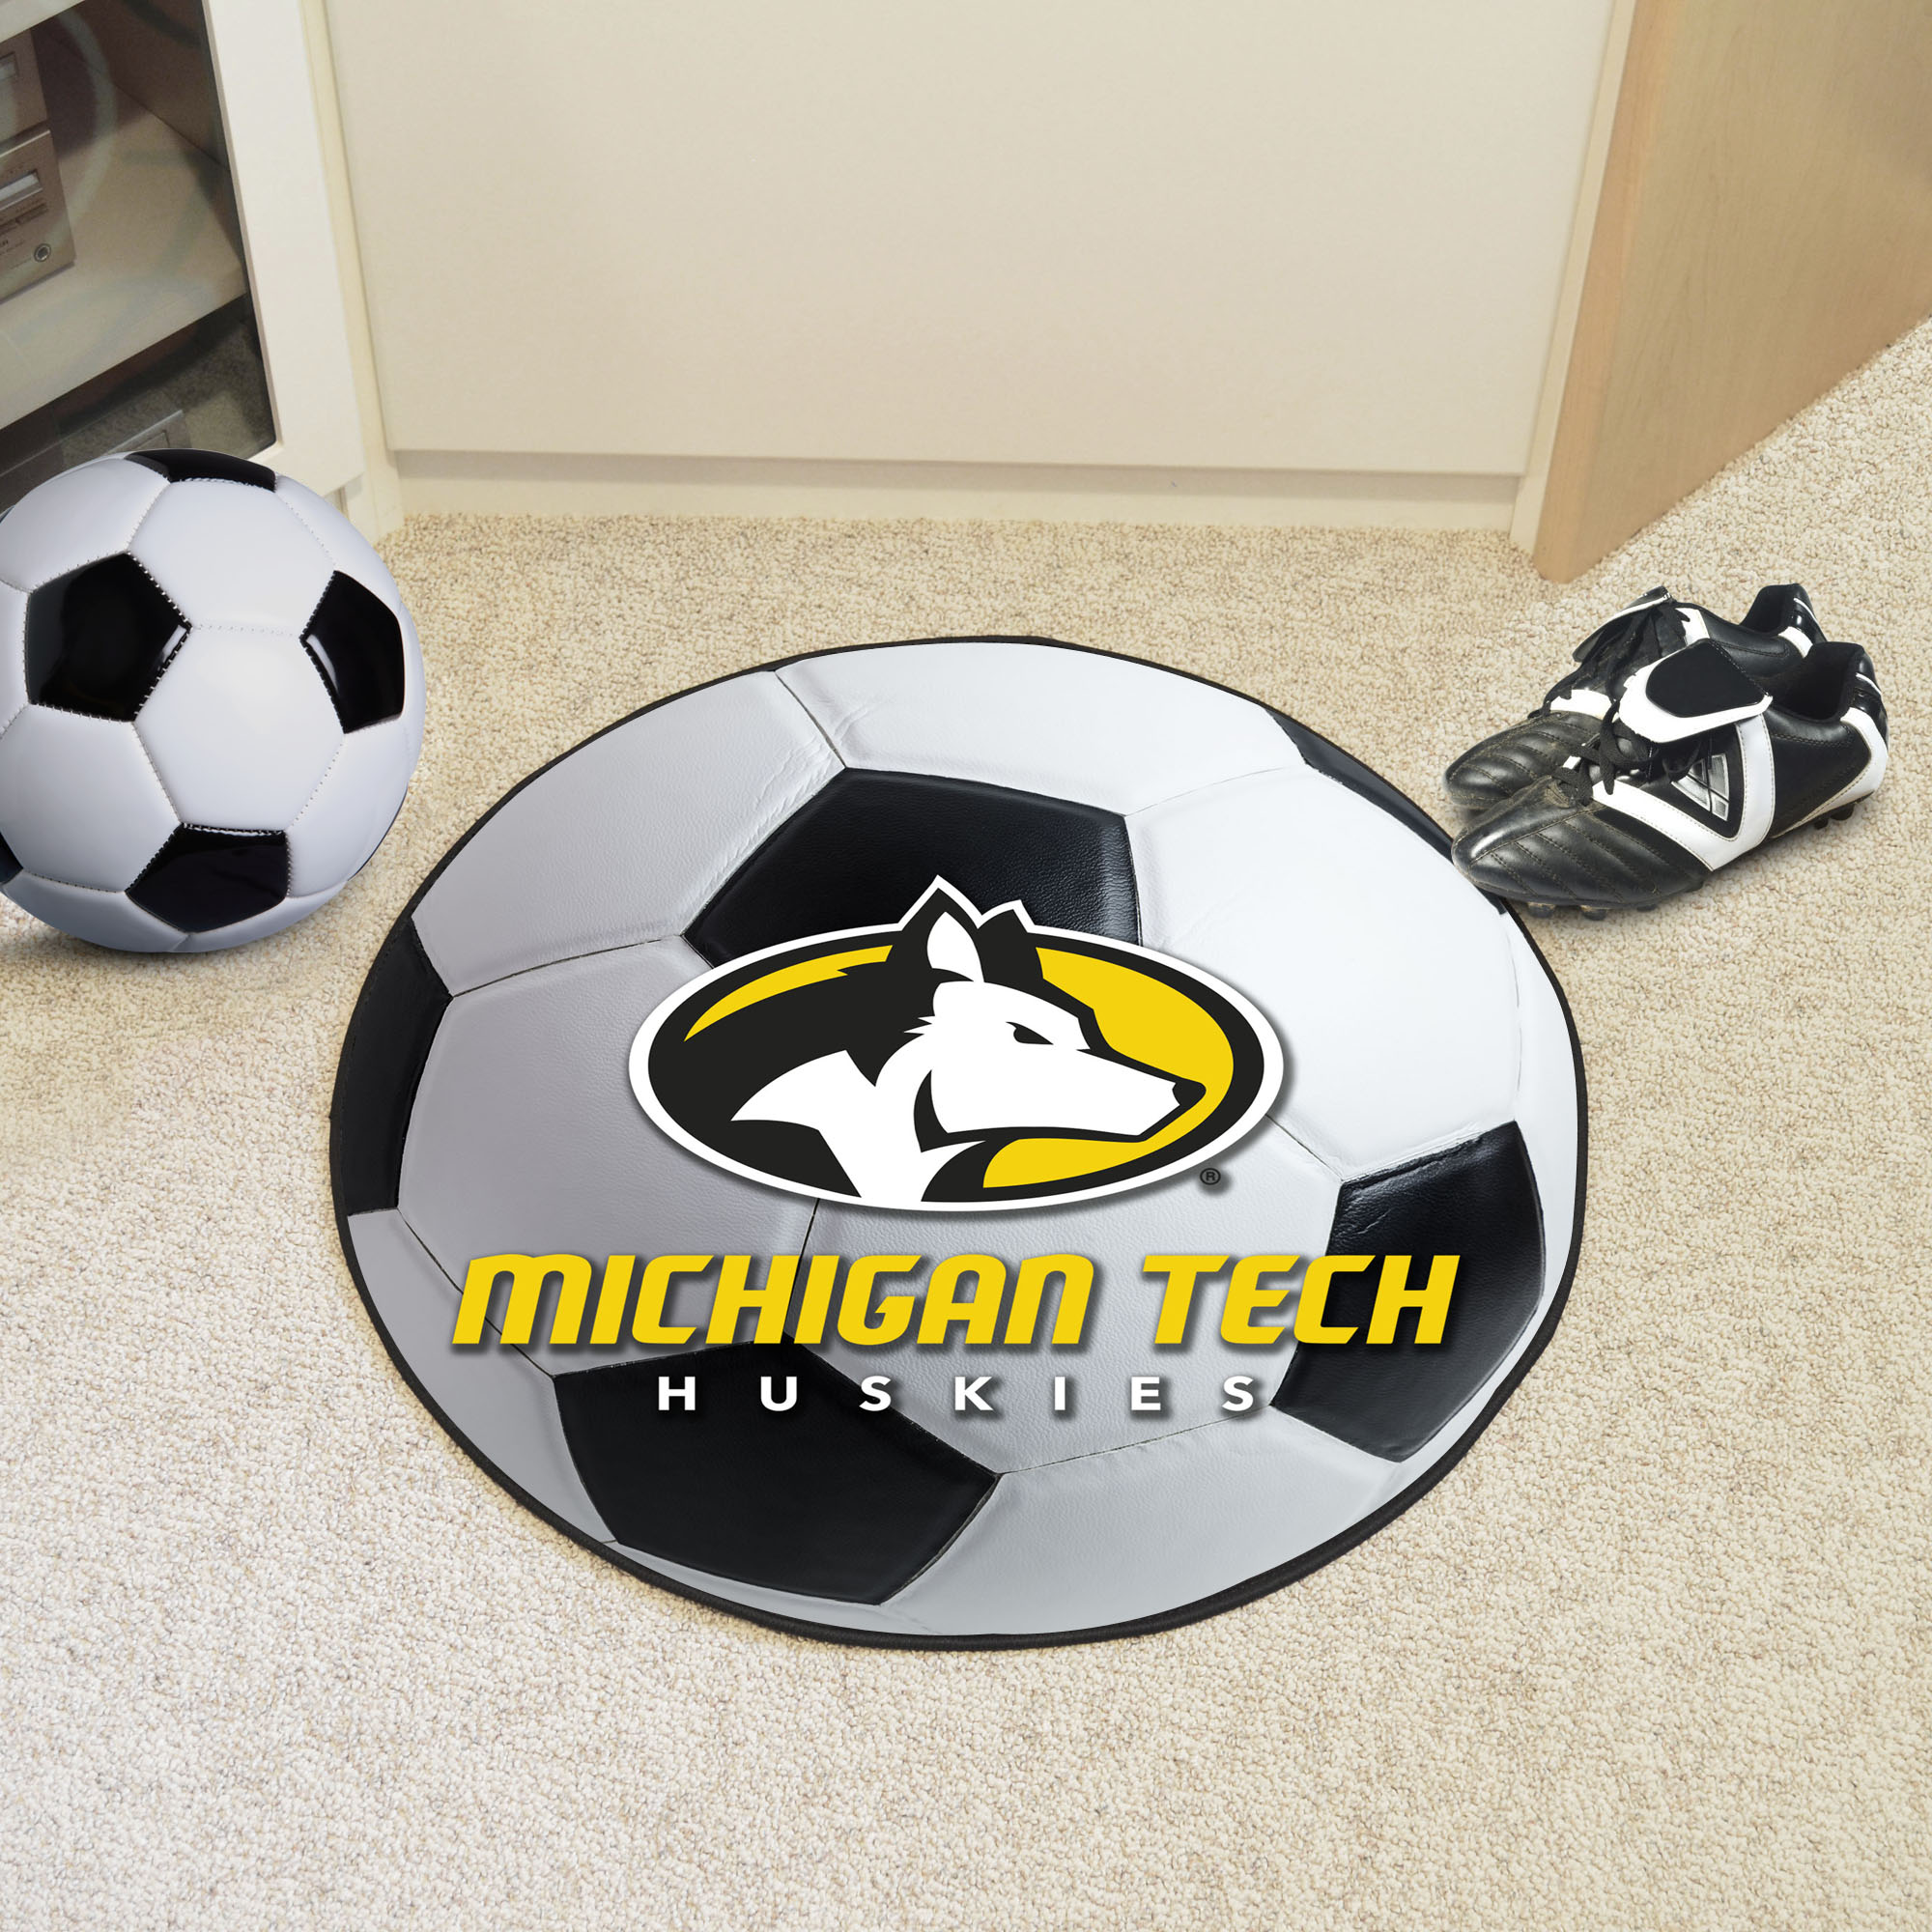 Michigan Technological University Ball Shaped Area rugs (Ball Shaped Area Rugs: Soccer Ball)